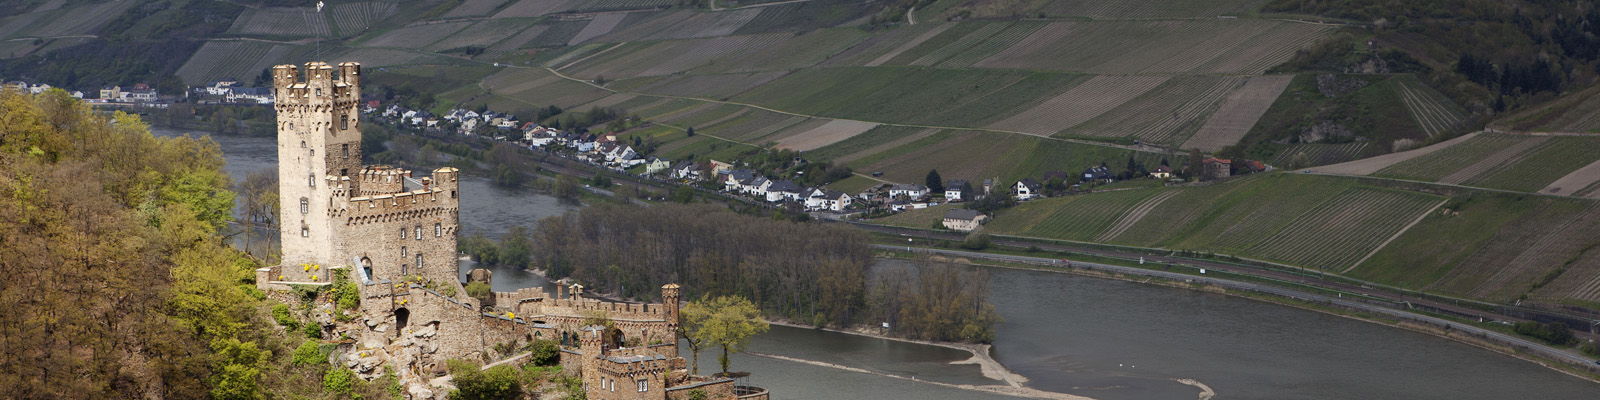 Ausblick in das Rheintal von der Burg Sooneck